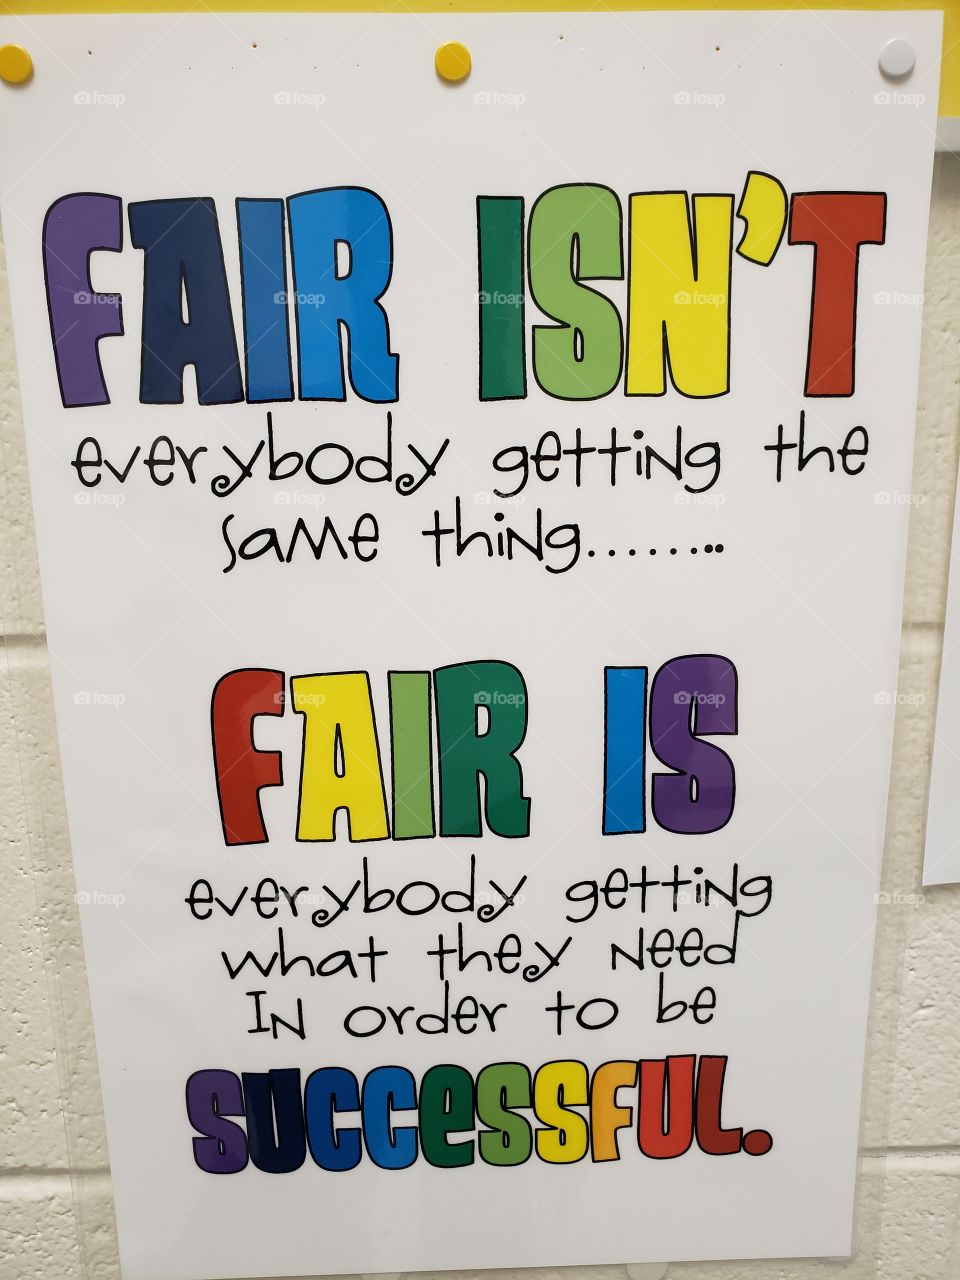 What fair is